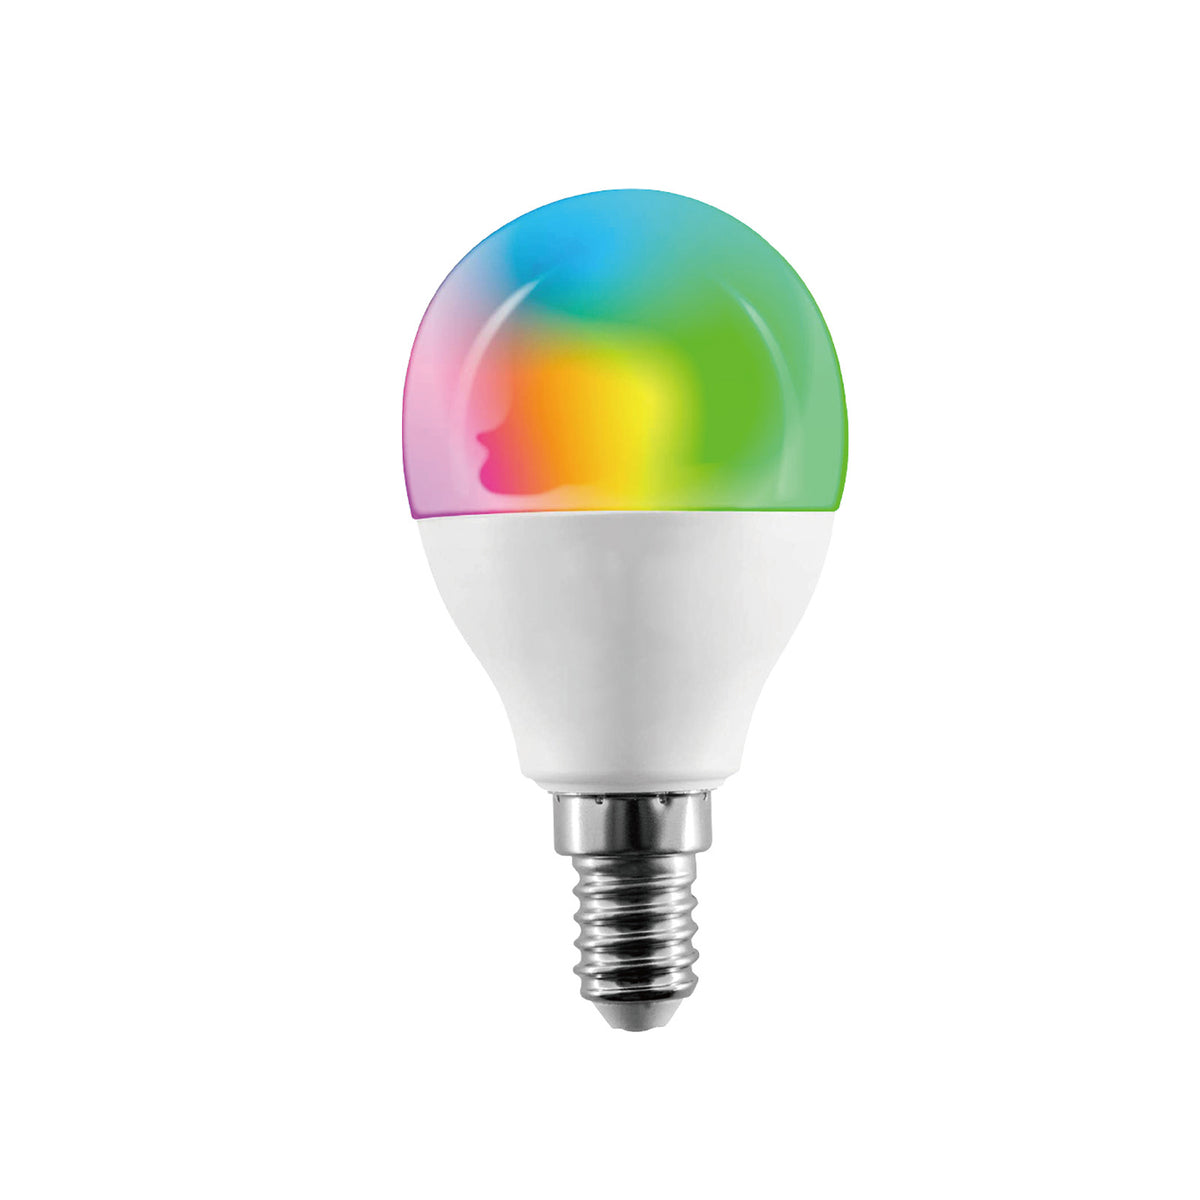 Intelligent 5.5W glödlampa med en dimbar lumen med kompatibel applikation med Google och Alexa